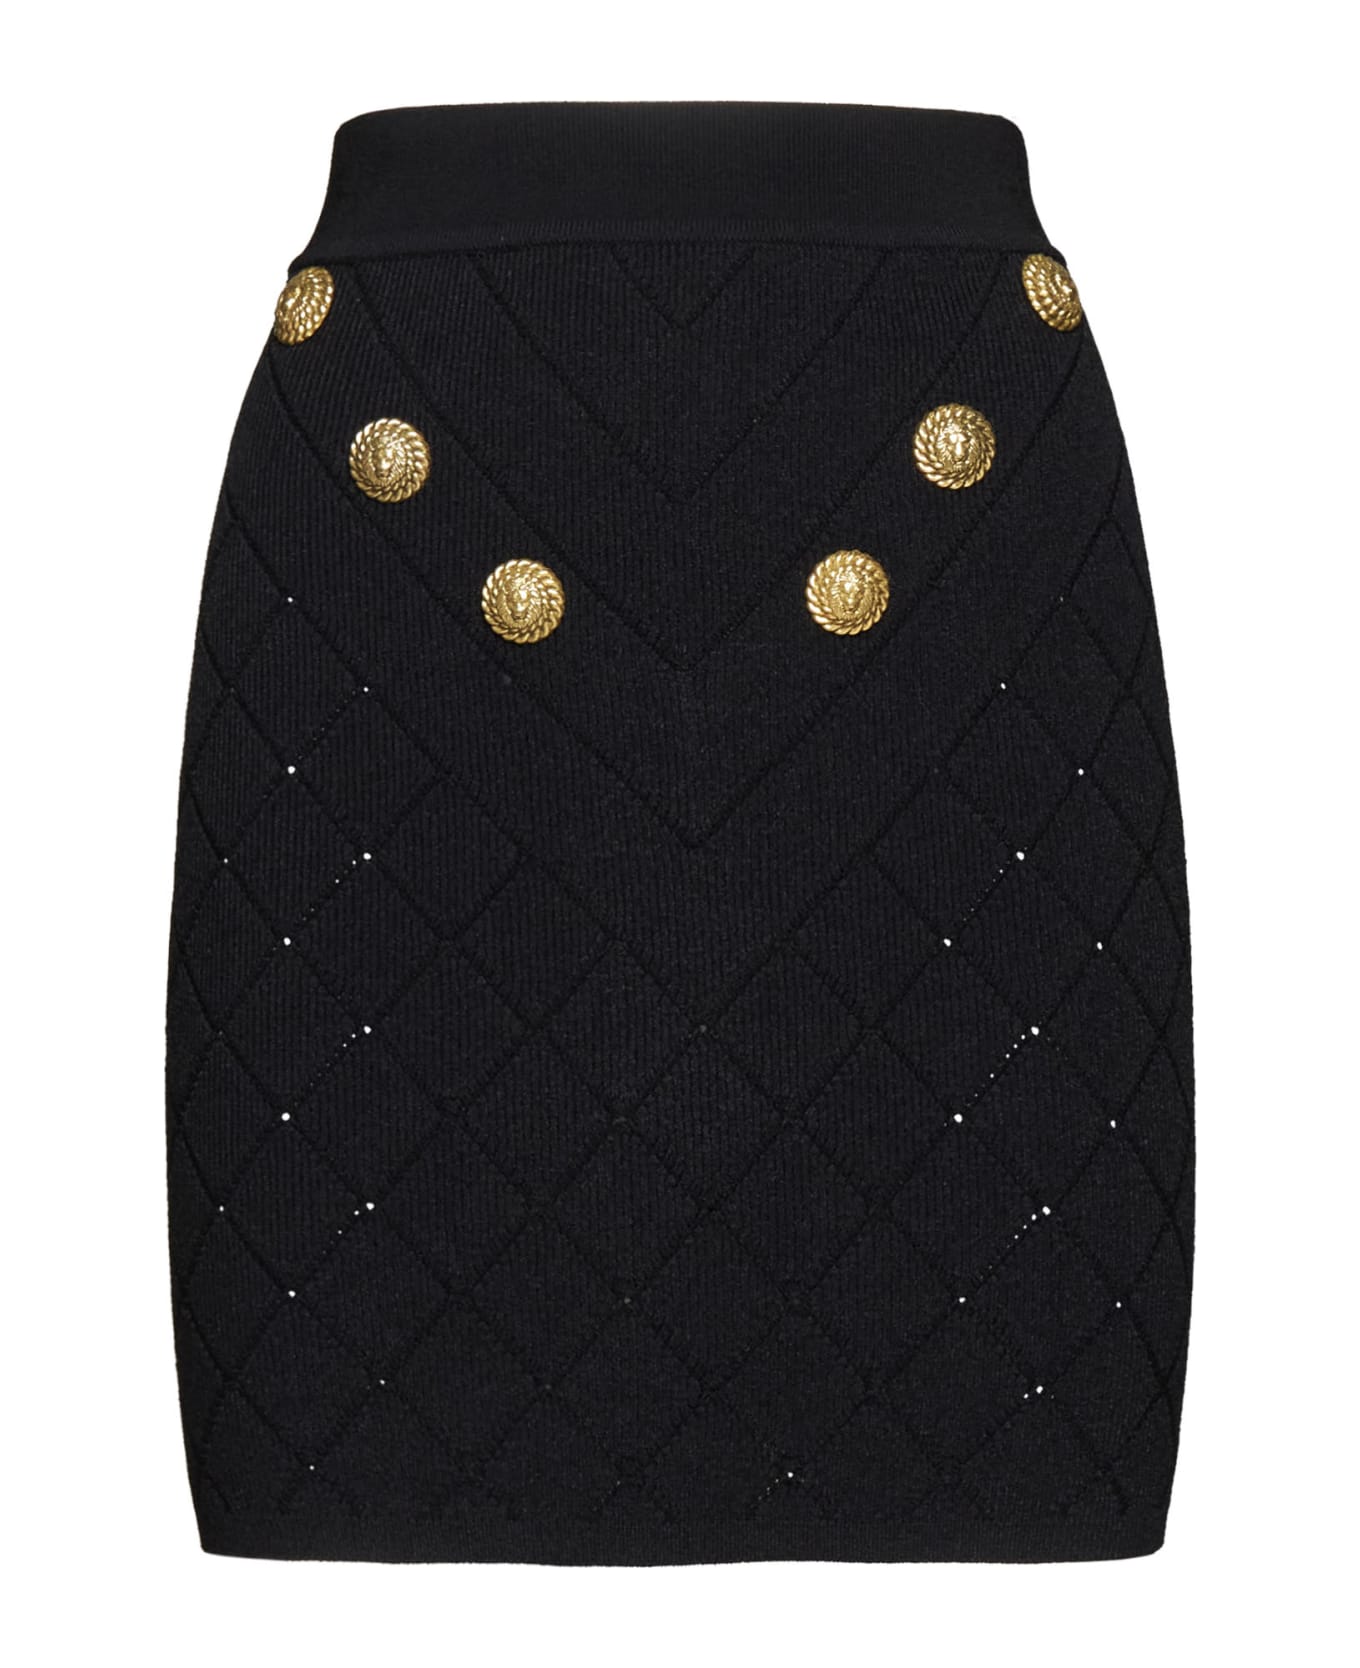 Balmain 6-button Knit Skirt - Black スカート